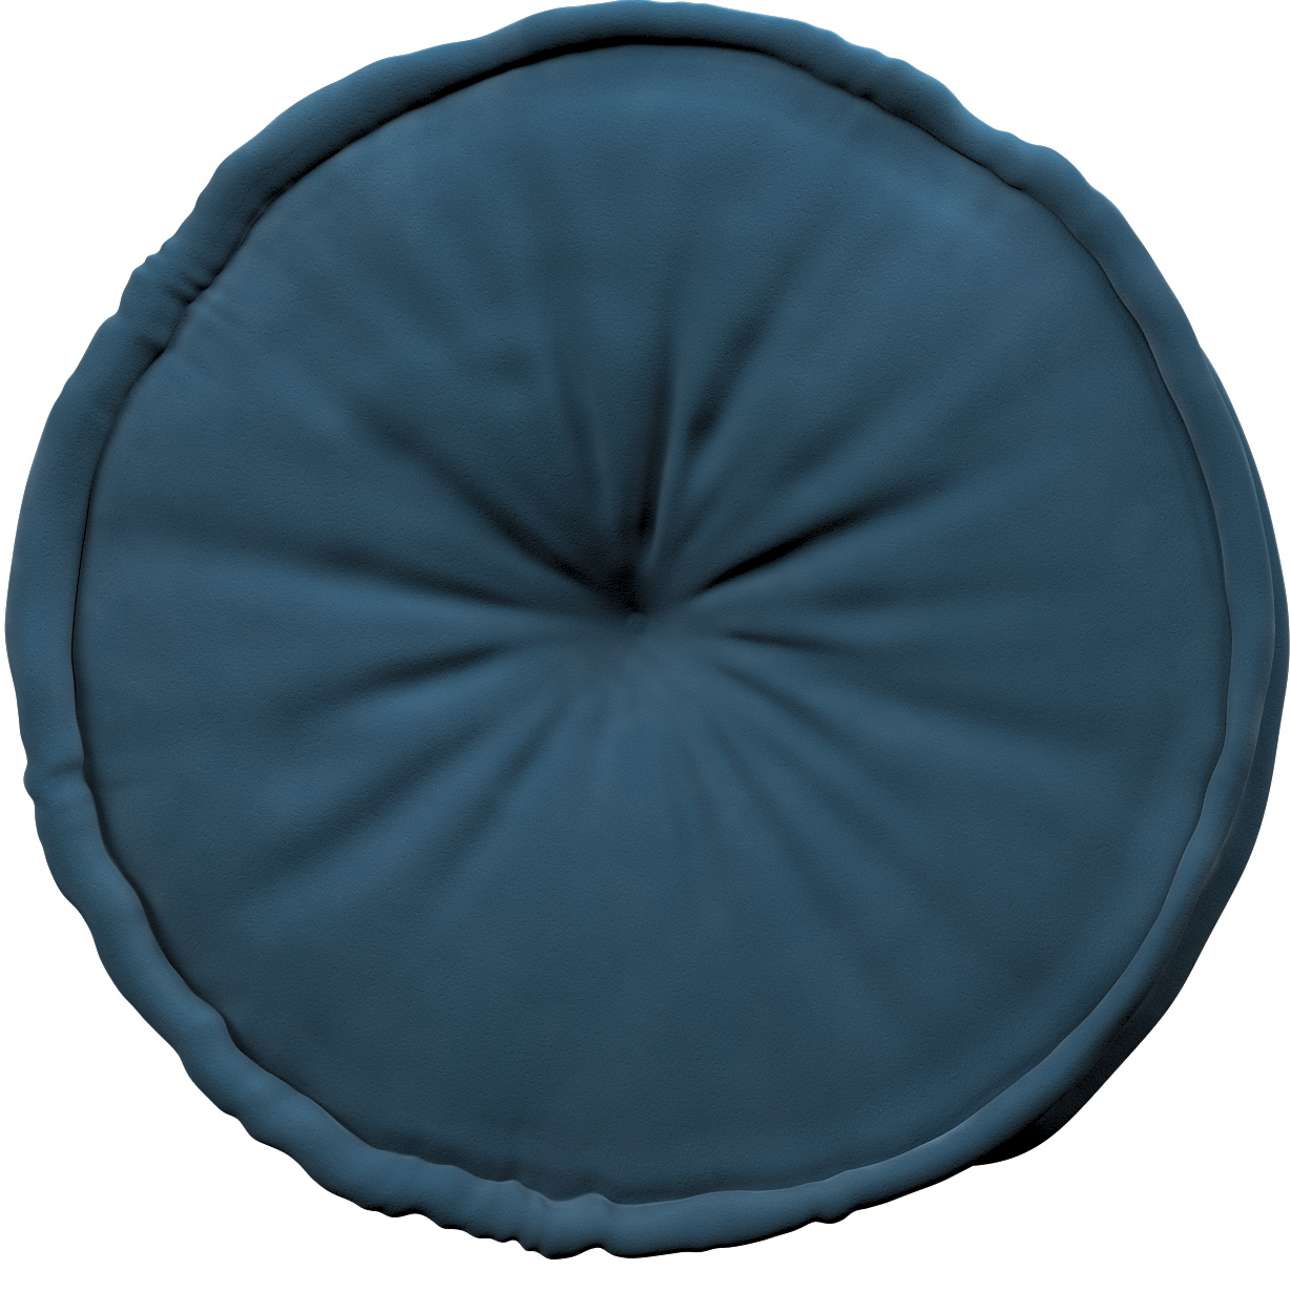 French pouf 50x13cm - Posh Velvet - dark blue